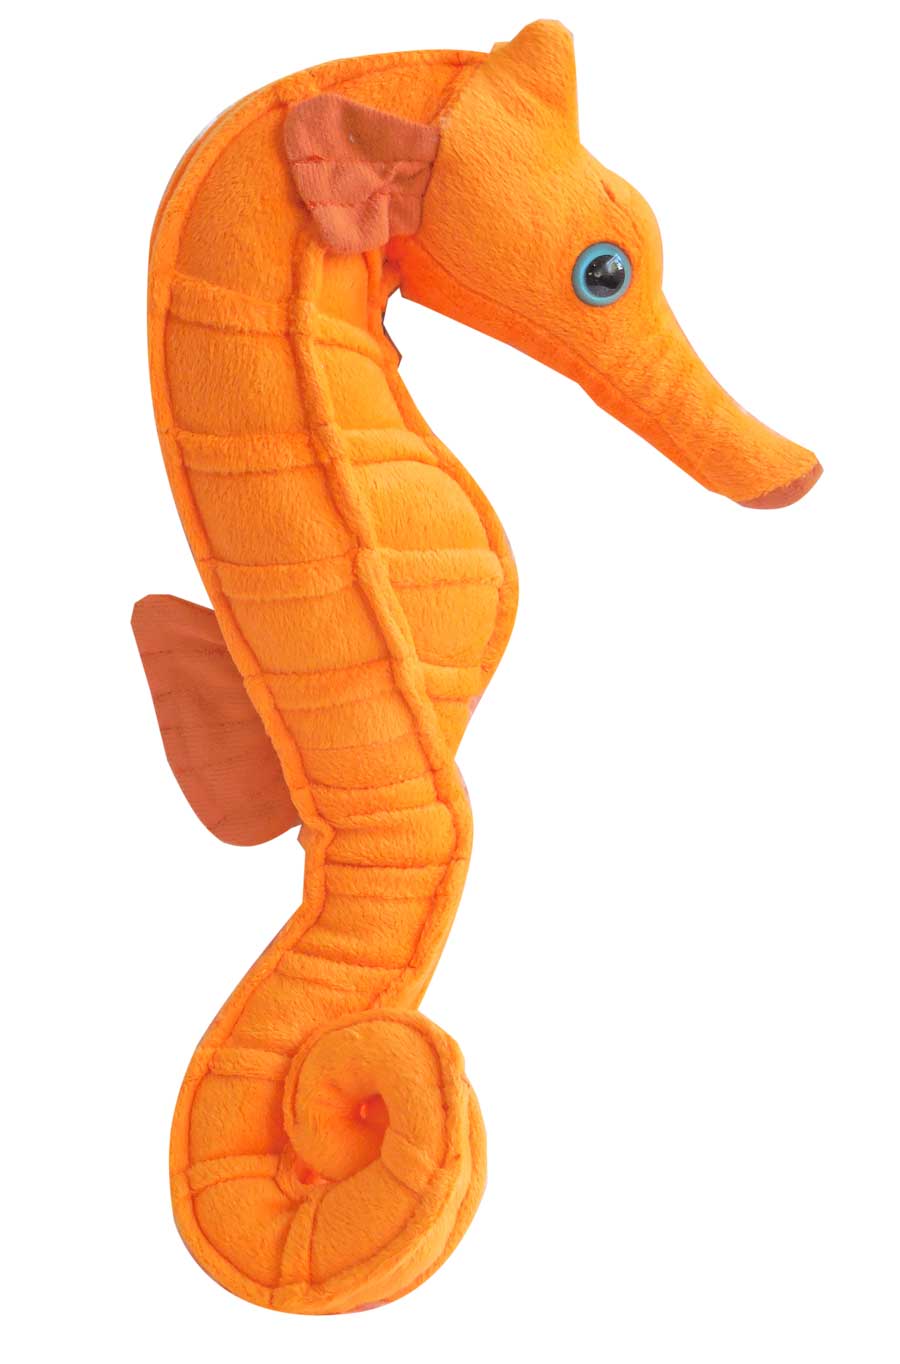 orange stuffed animal